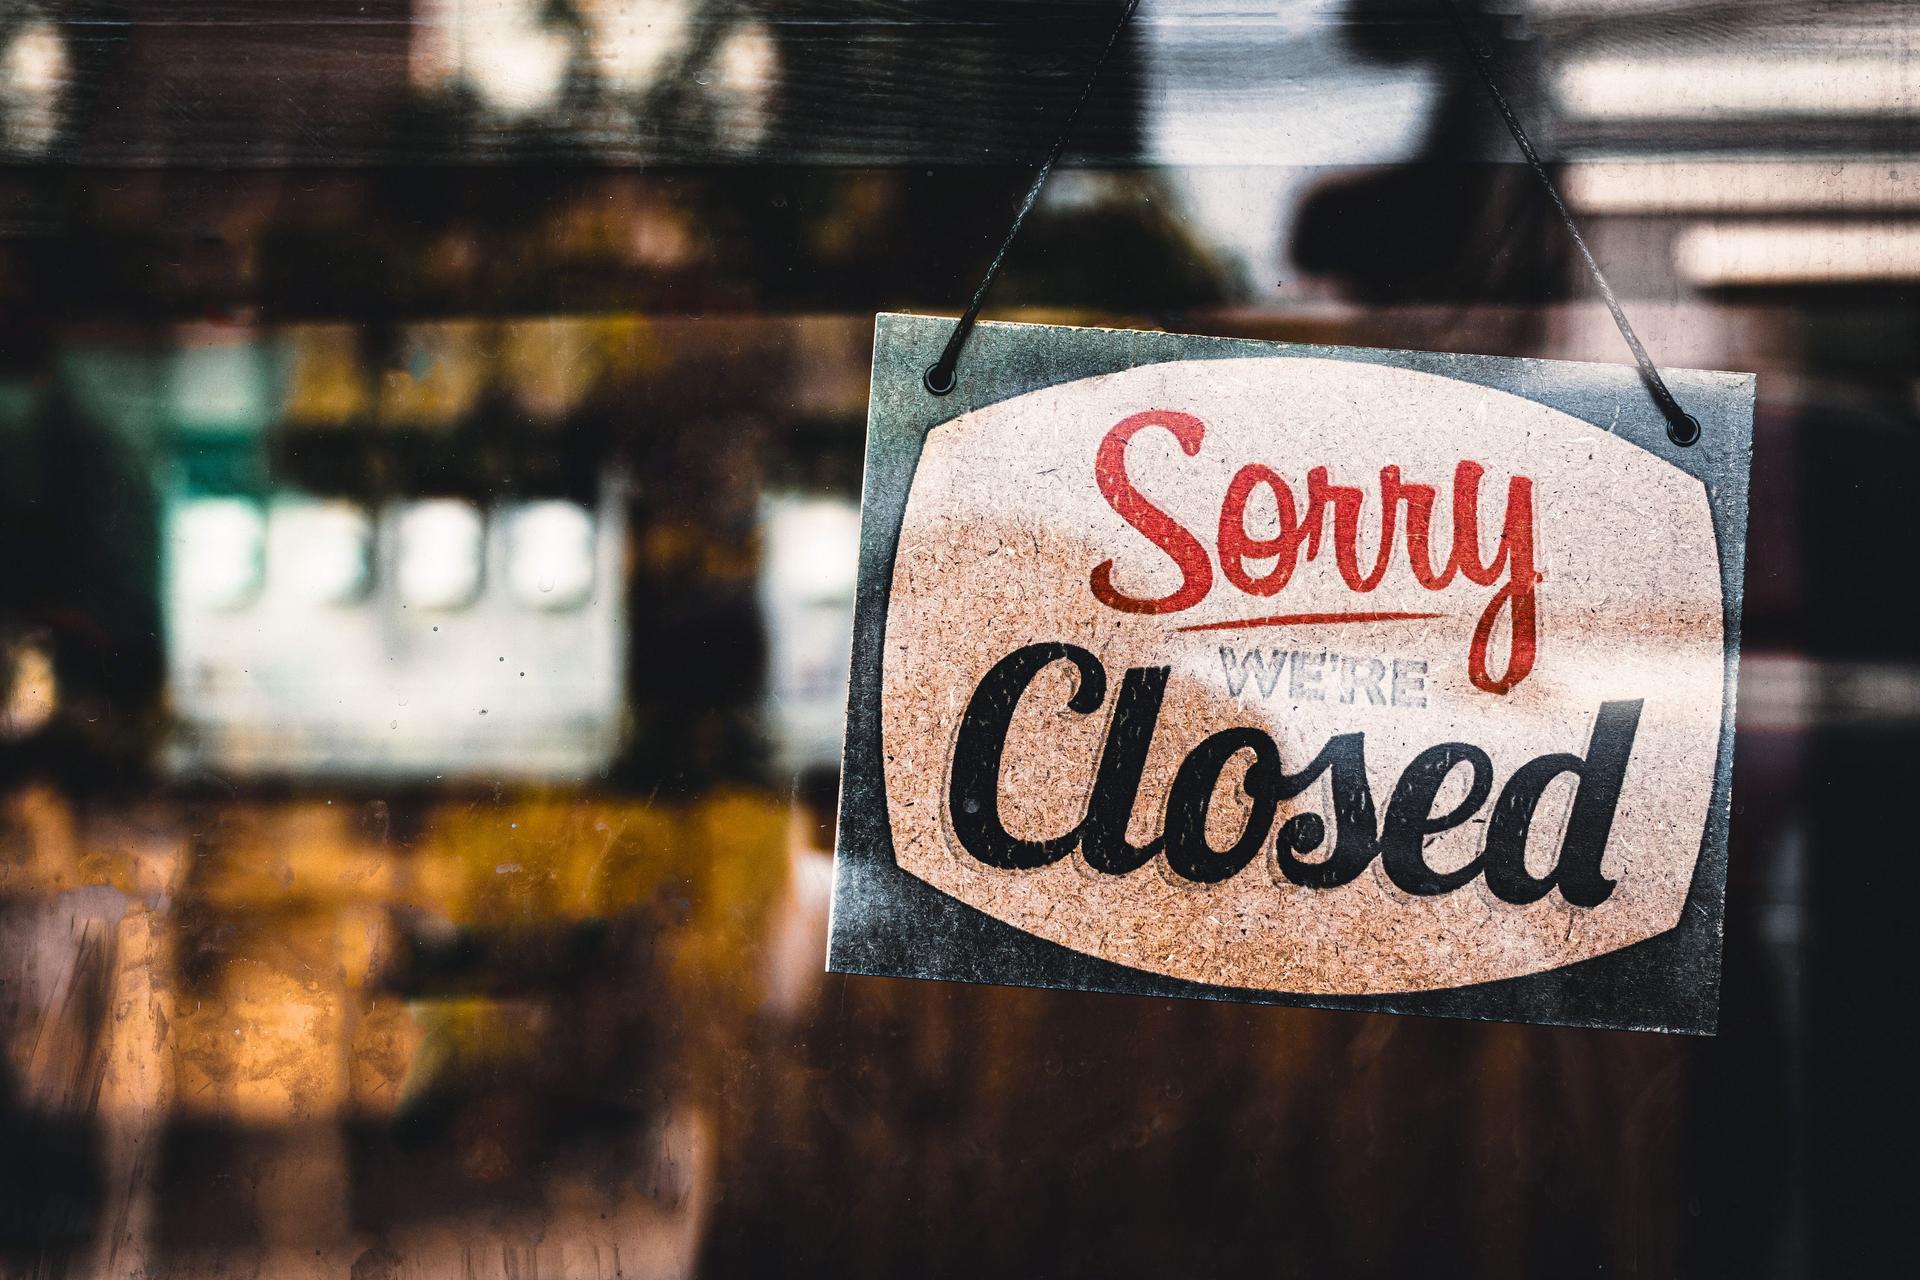 Schild mit der Aufschrift "Sorry we're closed" hängt hinter einer Glasscheibe von einem Laden.